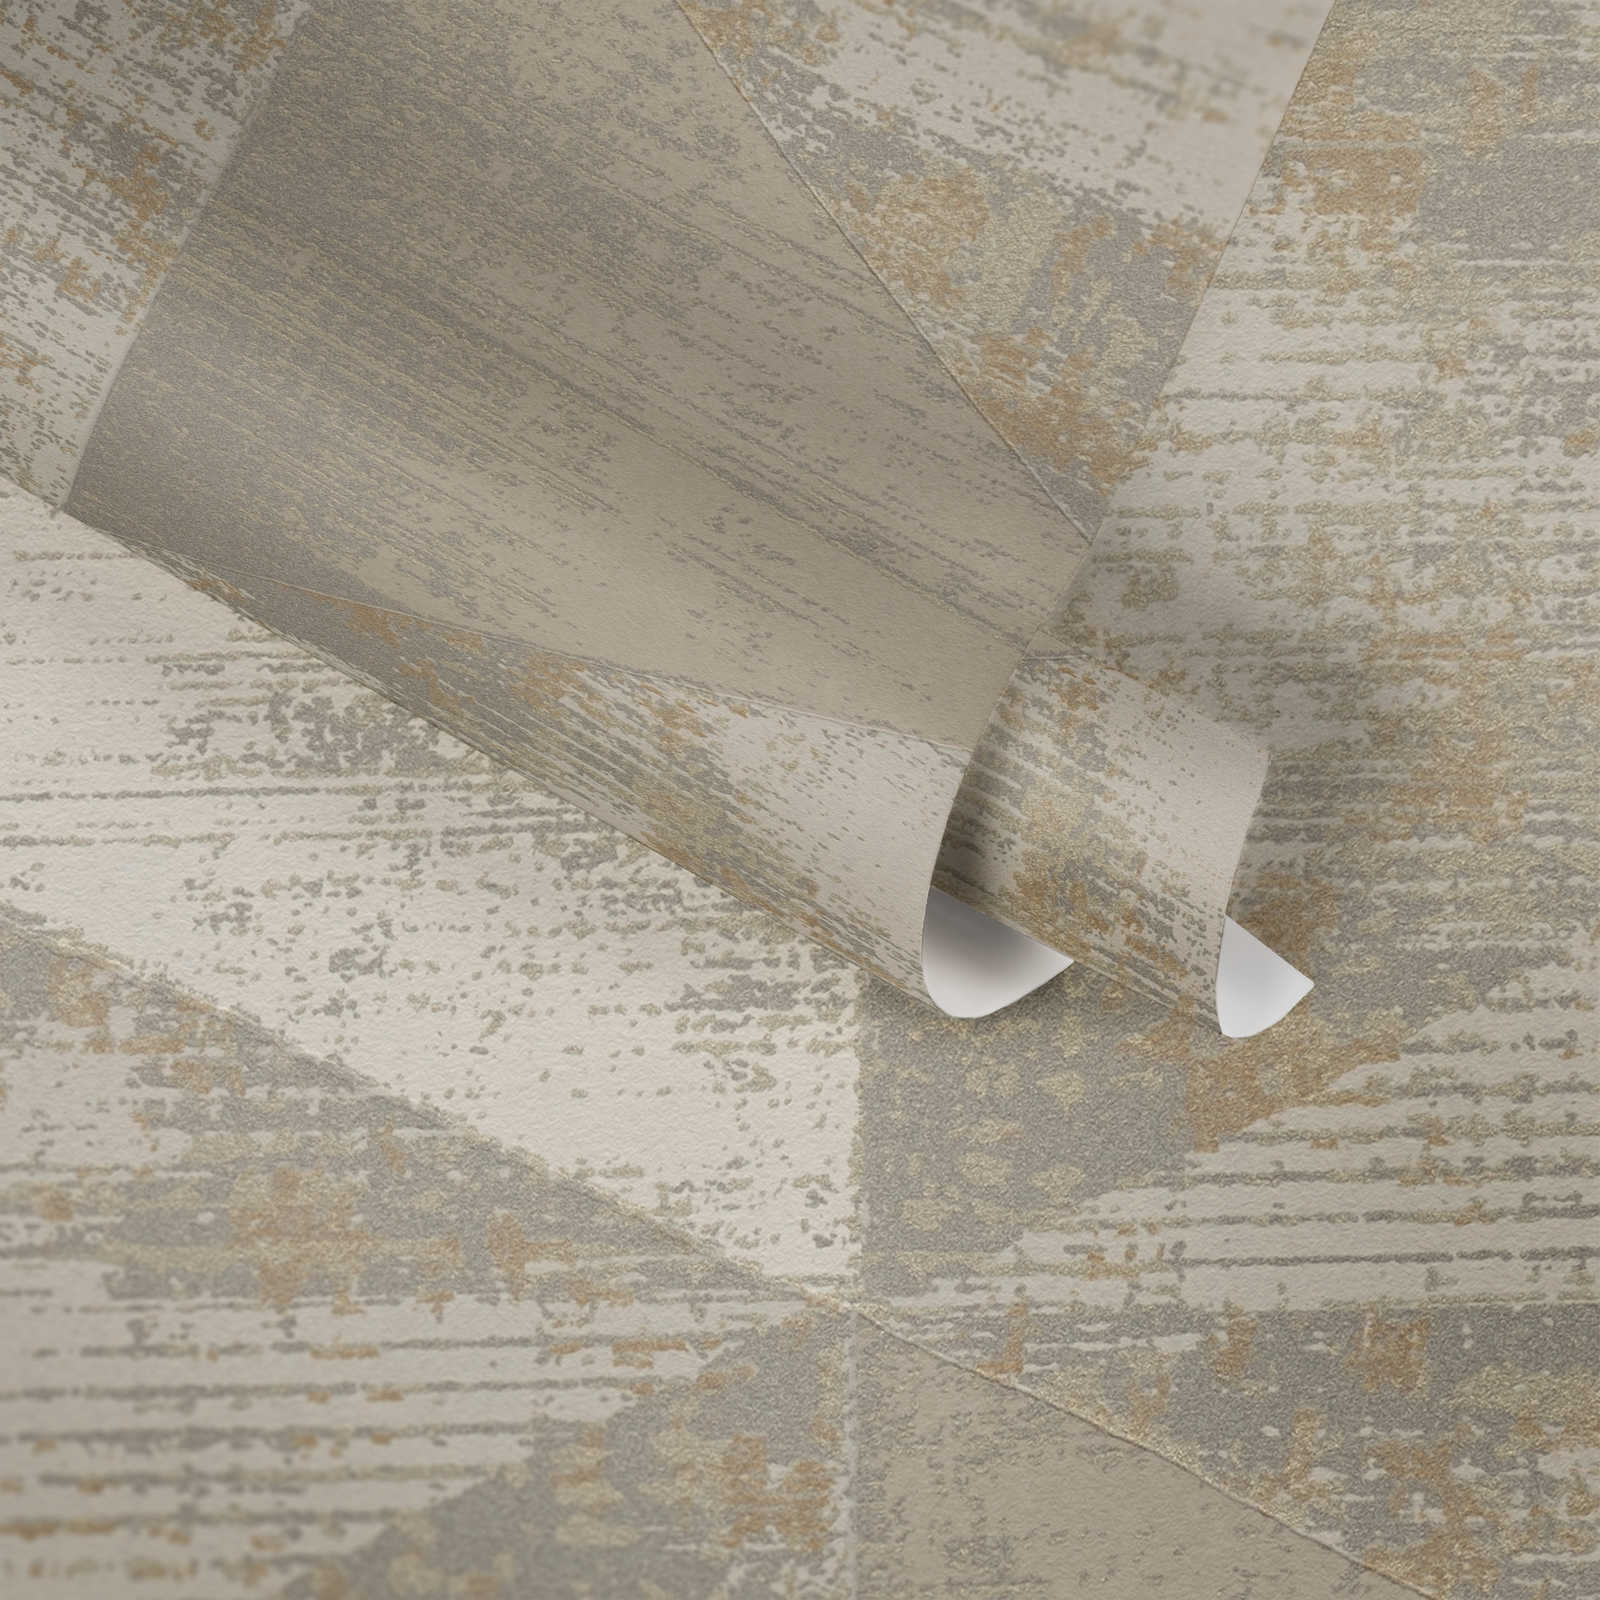             Papier peint style industriel avec aspect rustique métallique - métallique, beige, gris
        